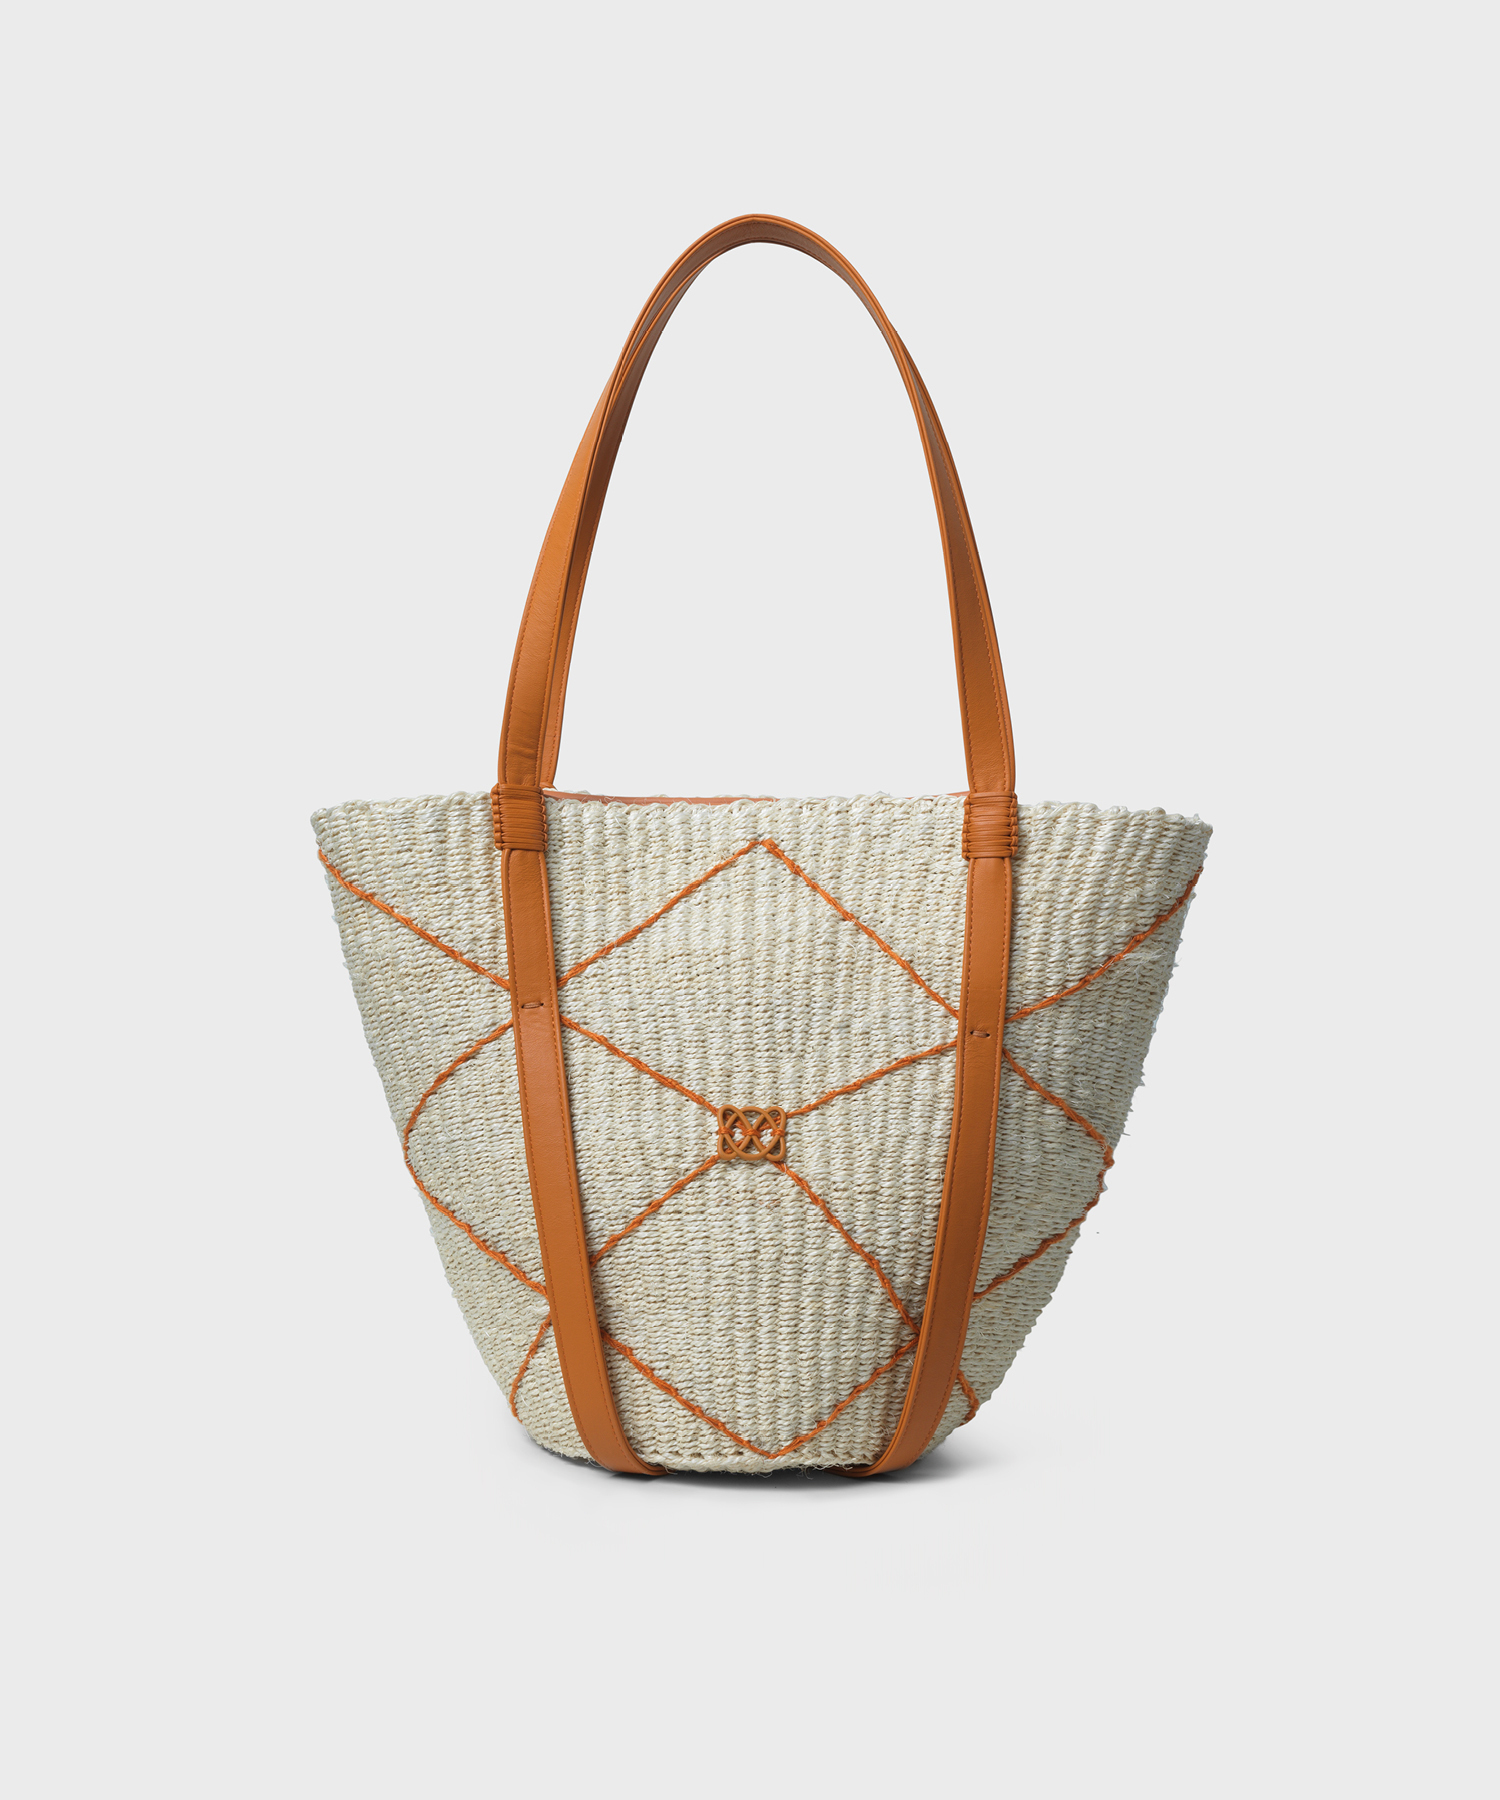 CC Basket Bag in Orange Leather